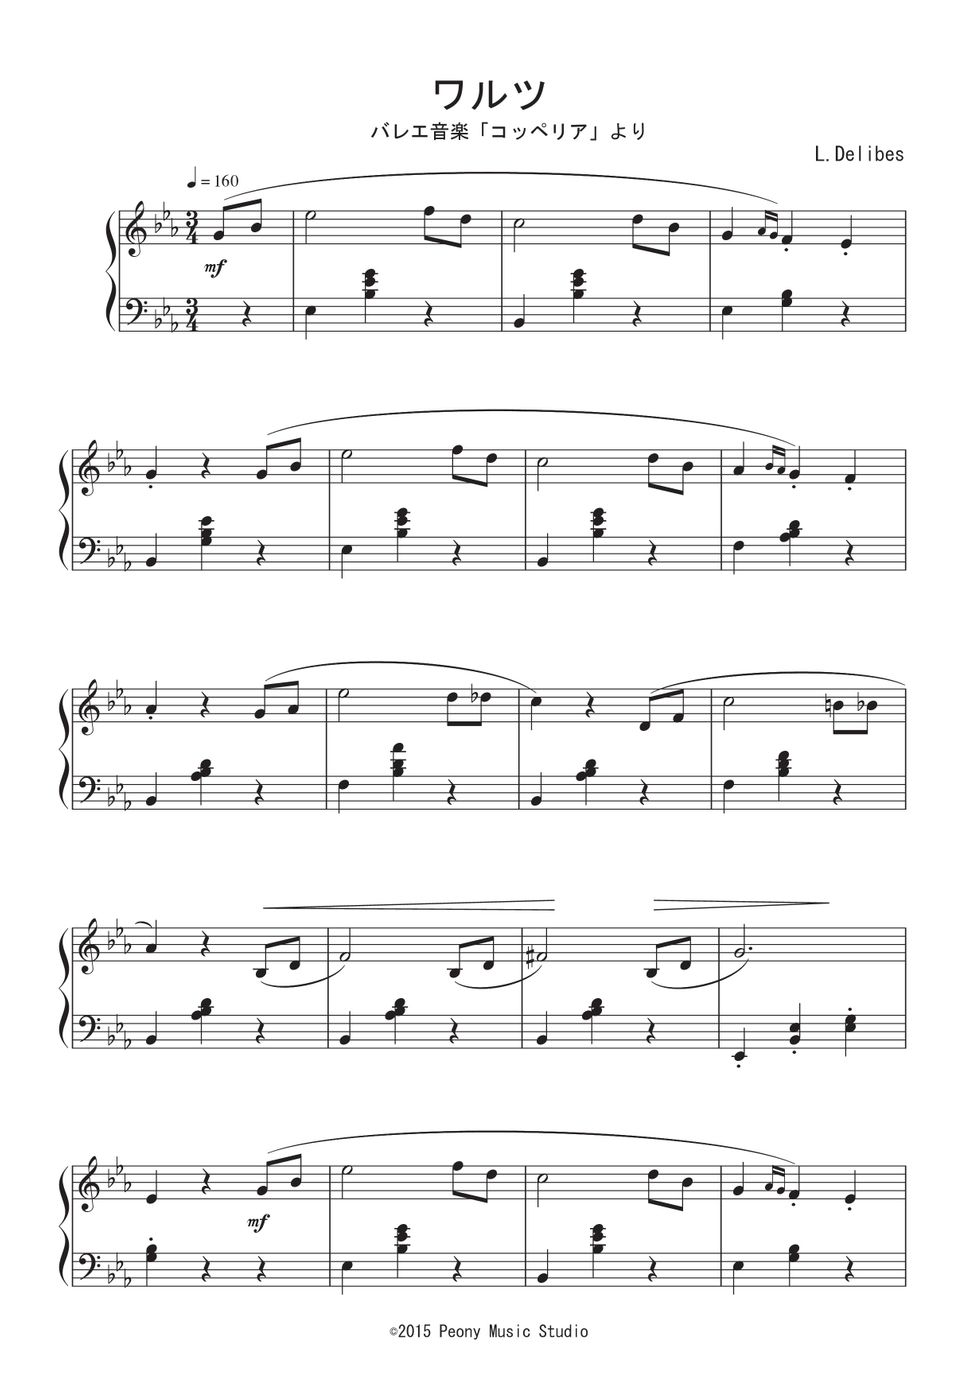 ドリーブ - バレエ「コッペリア」より ワルツ 楽譜 by Peony